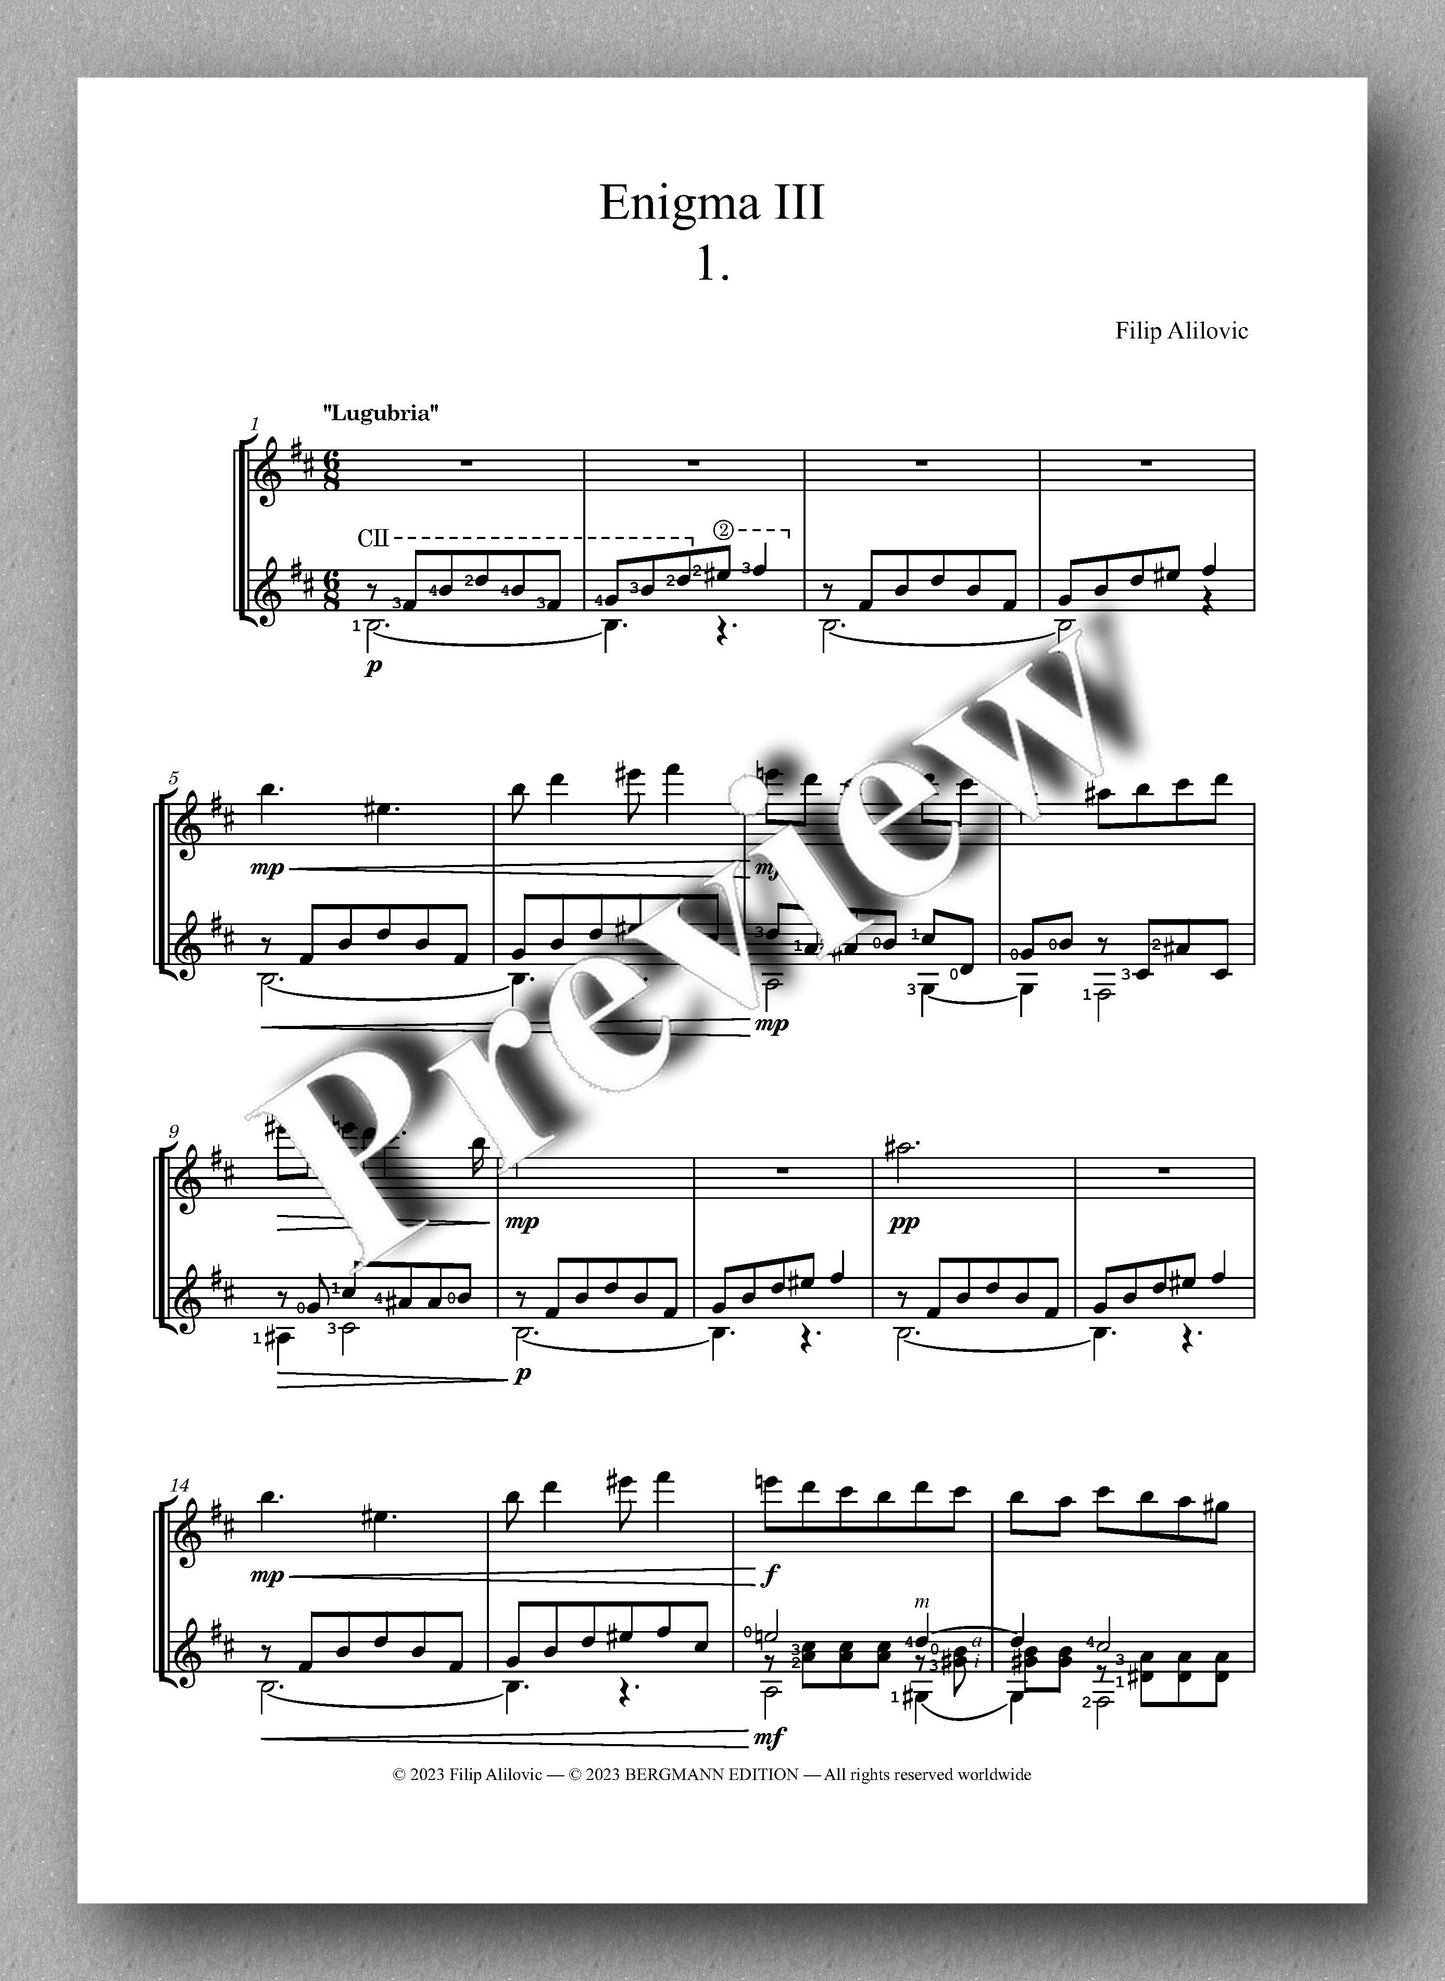 Filip Alilovic, Enigma III - preview of the music score 1